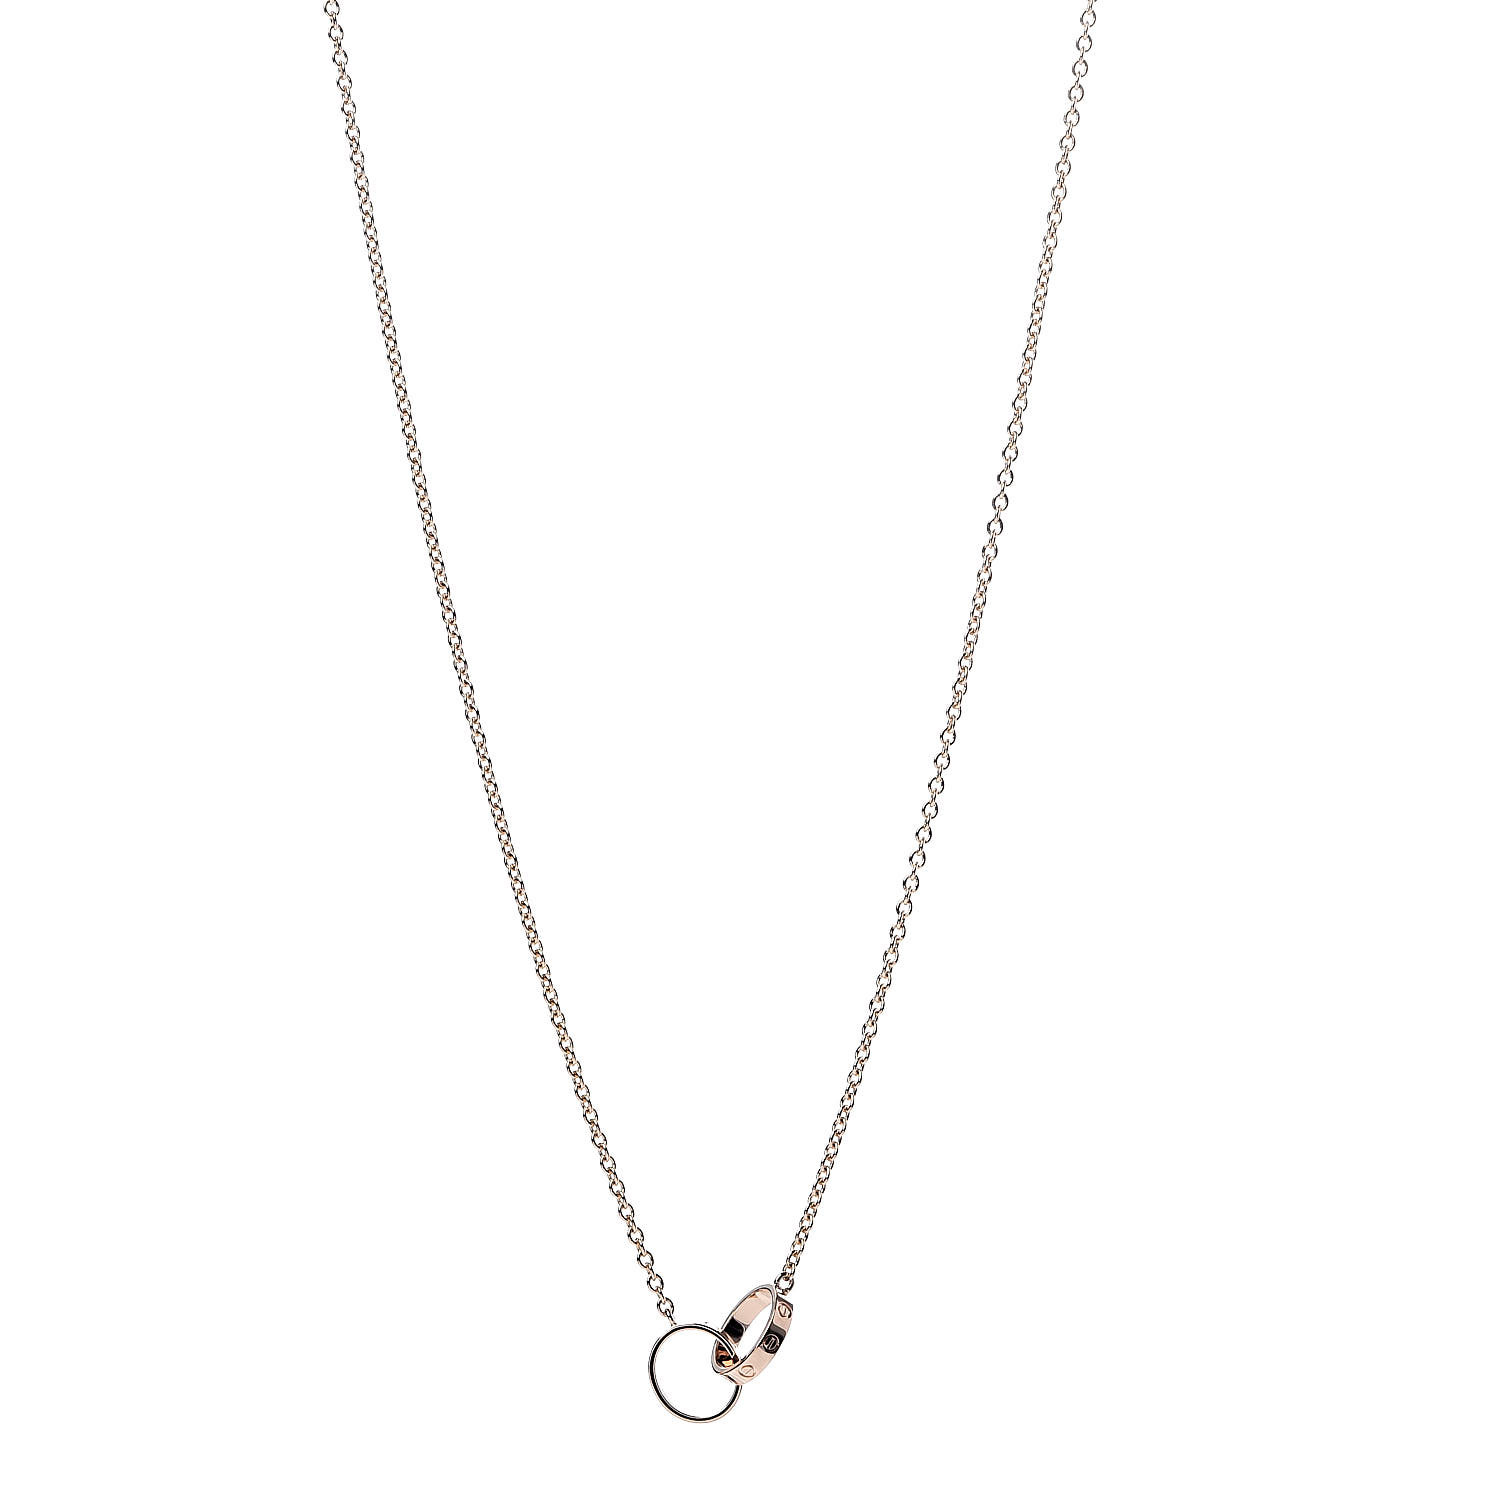 Cartier 18k Pink Gold Interlocking Love Necklace Fashionphile